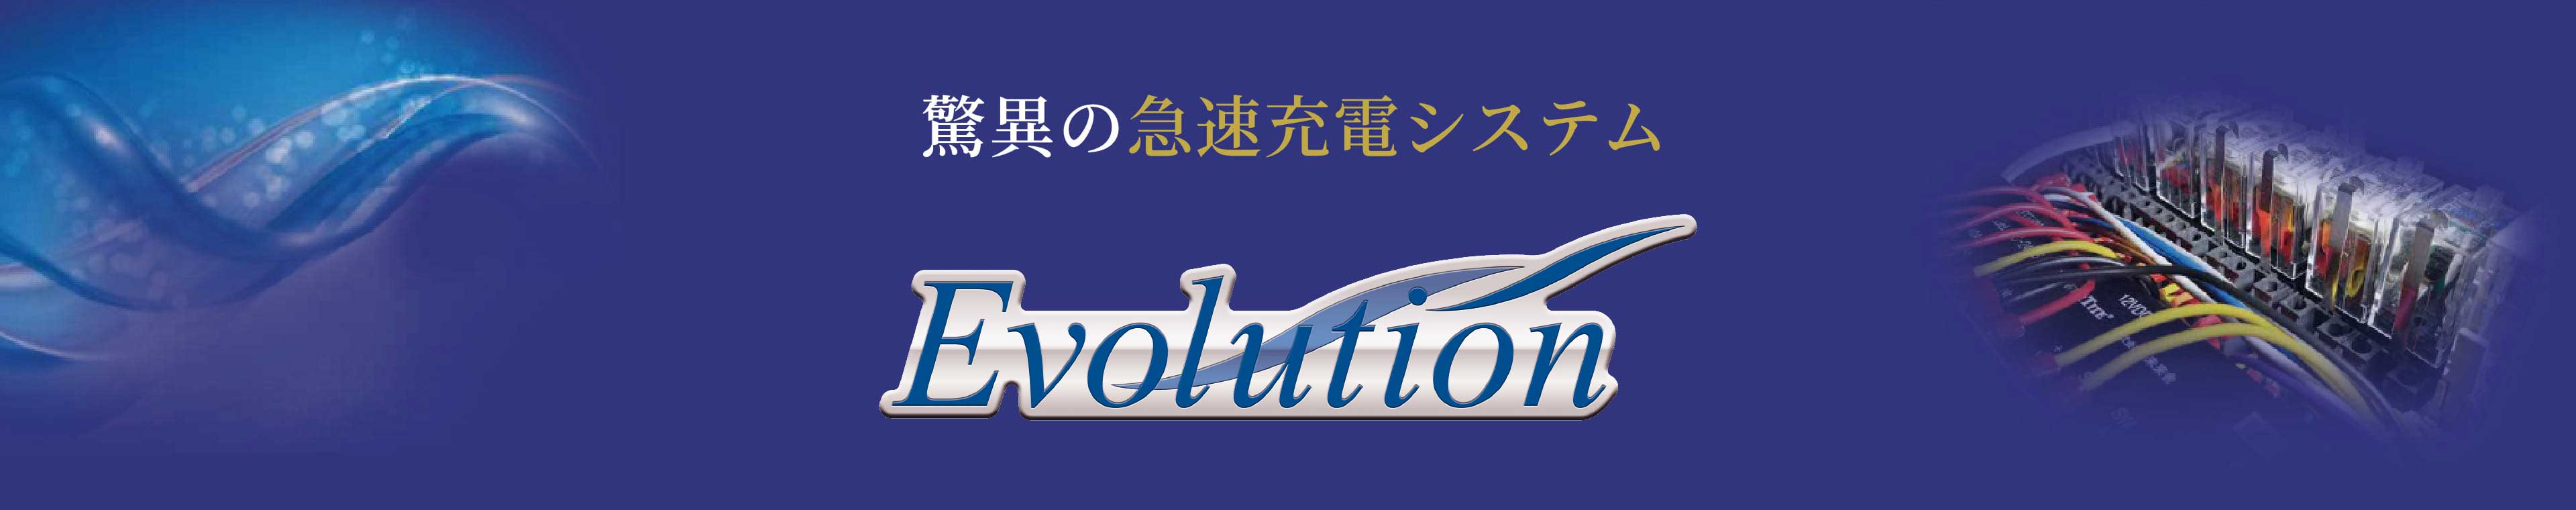 EVOLUTION-エボリューション